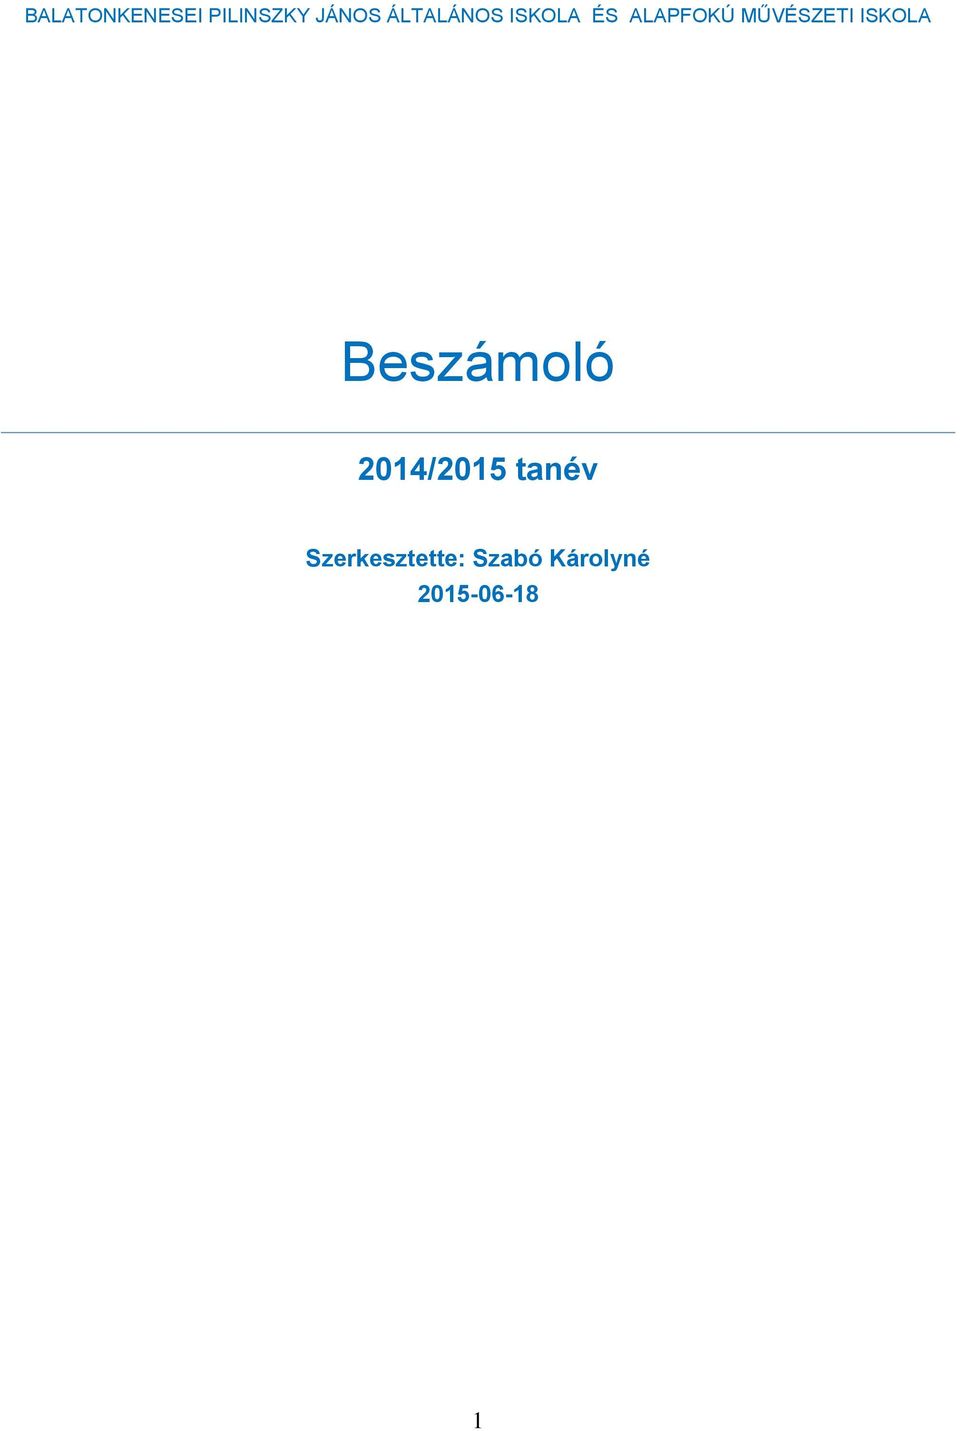 MŰVÉSZETI ISKOLA Beszámoló 2014/2015